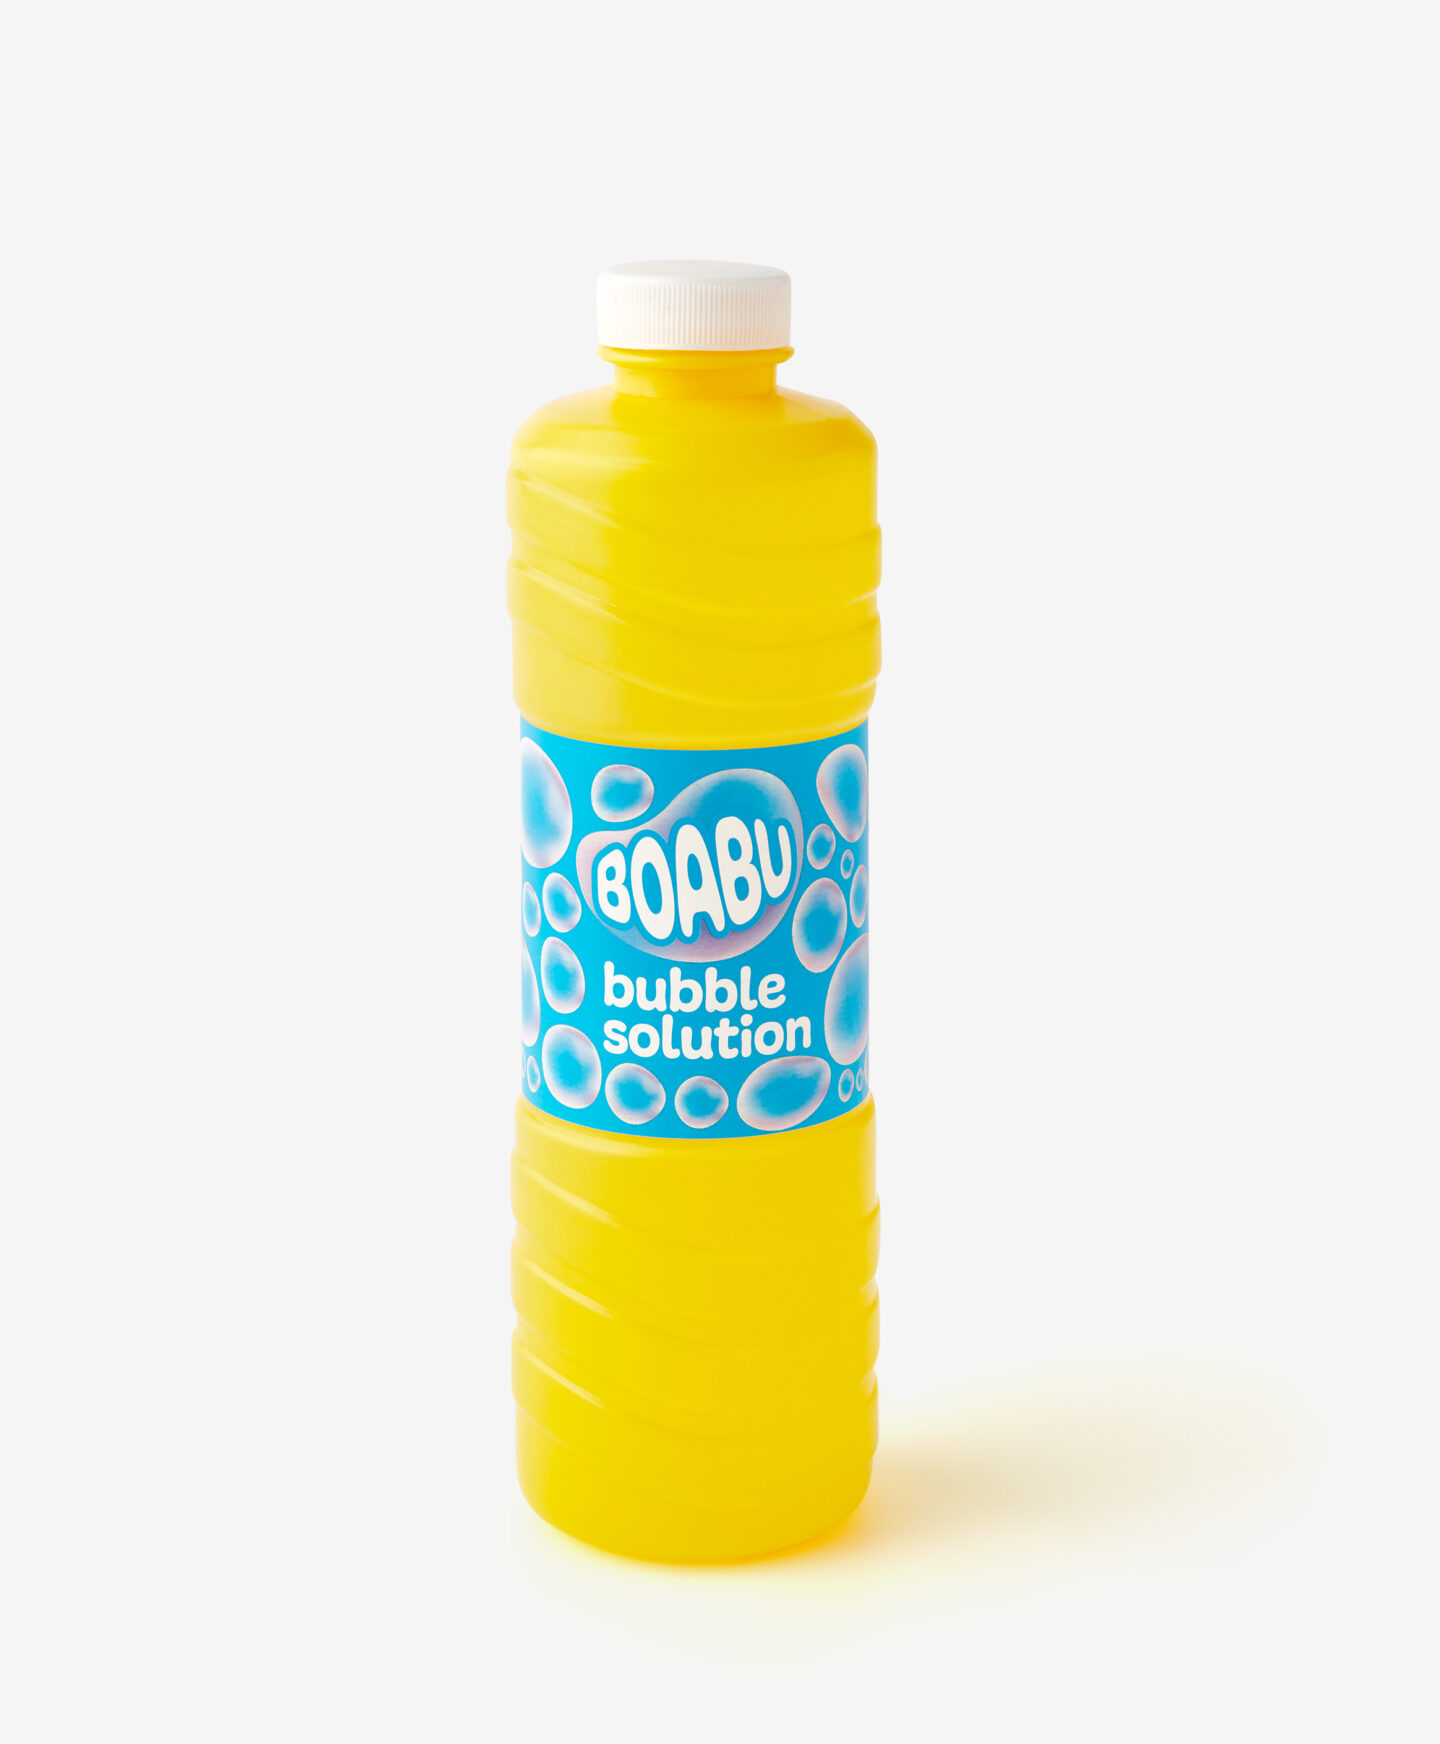 liquido bolle di sapone giallo